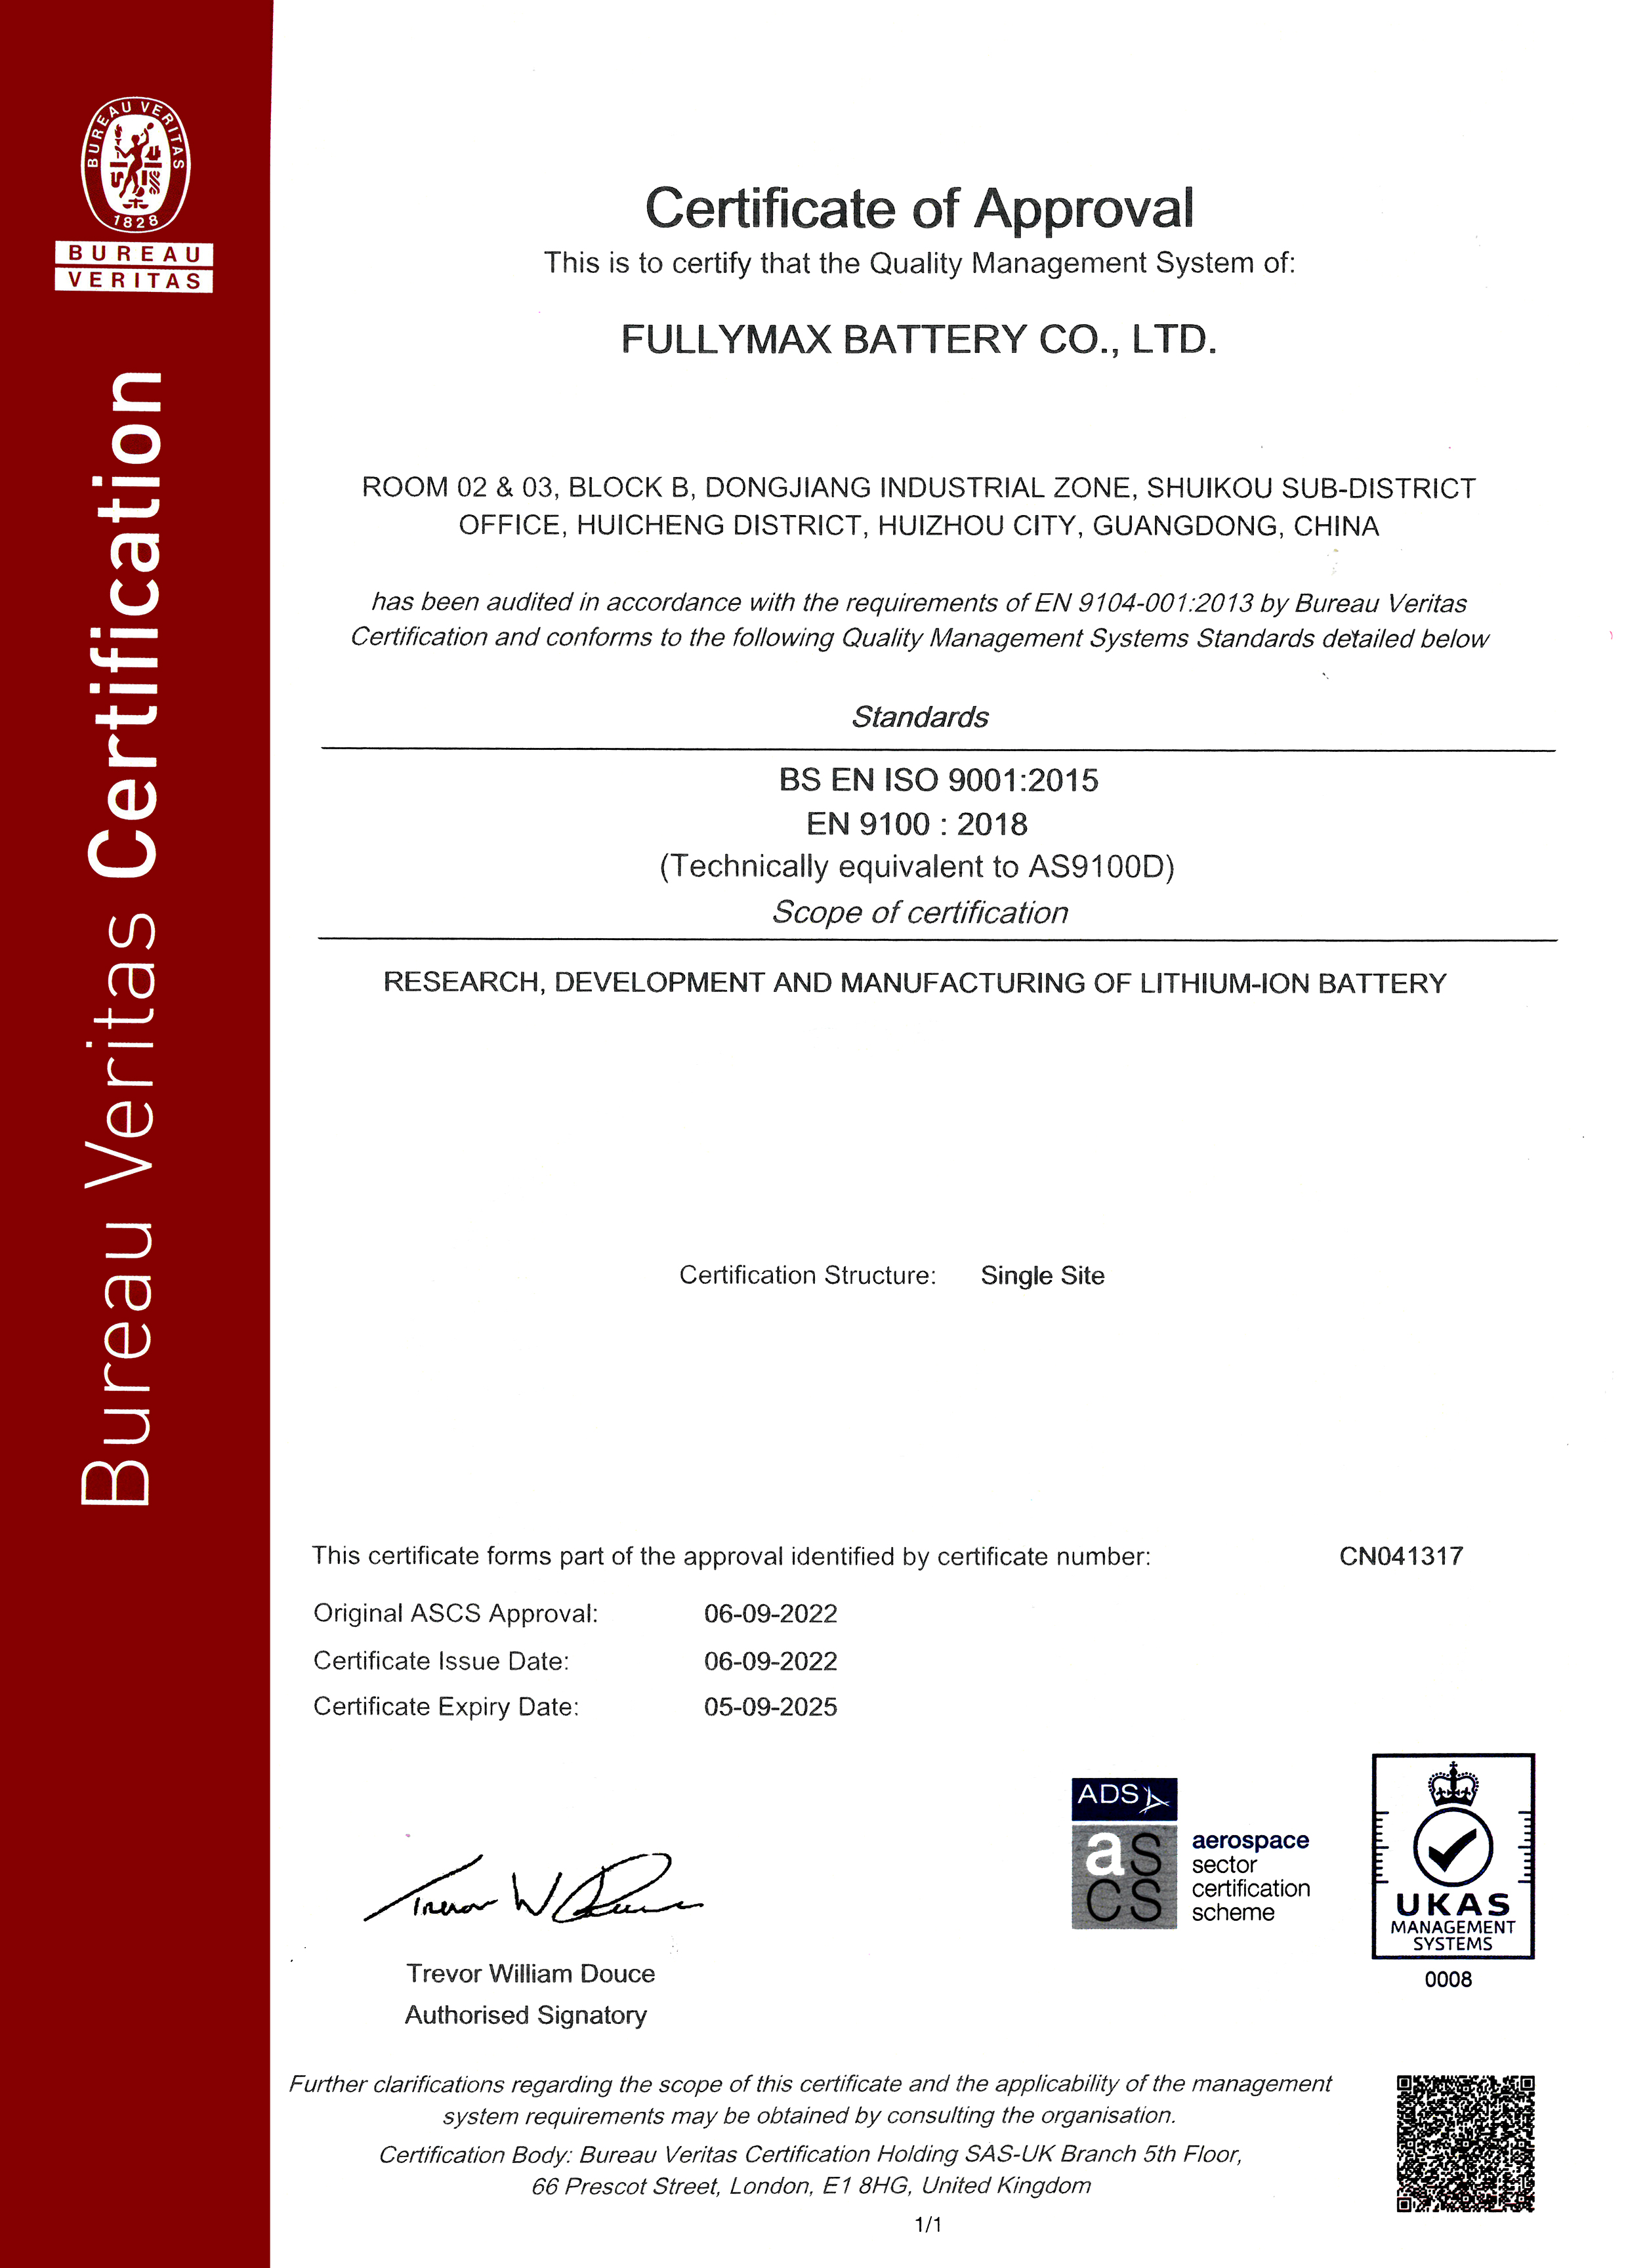 【喜报】热烈祝贺betway88必威东盟体育顺利获取了AS9100D:2016航空质量管理体系证书